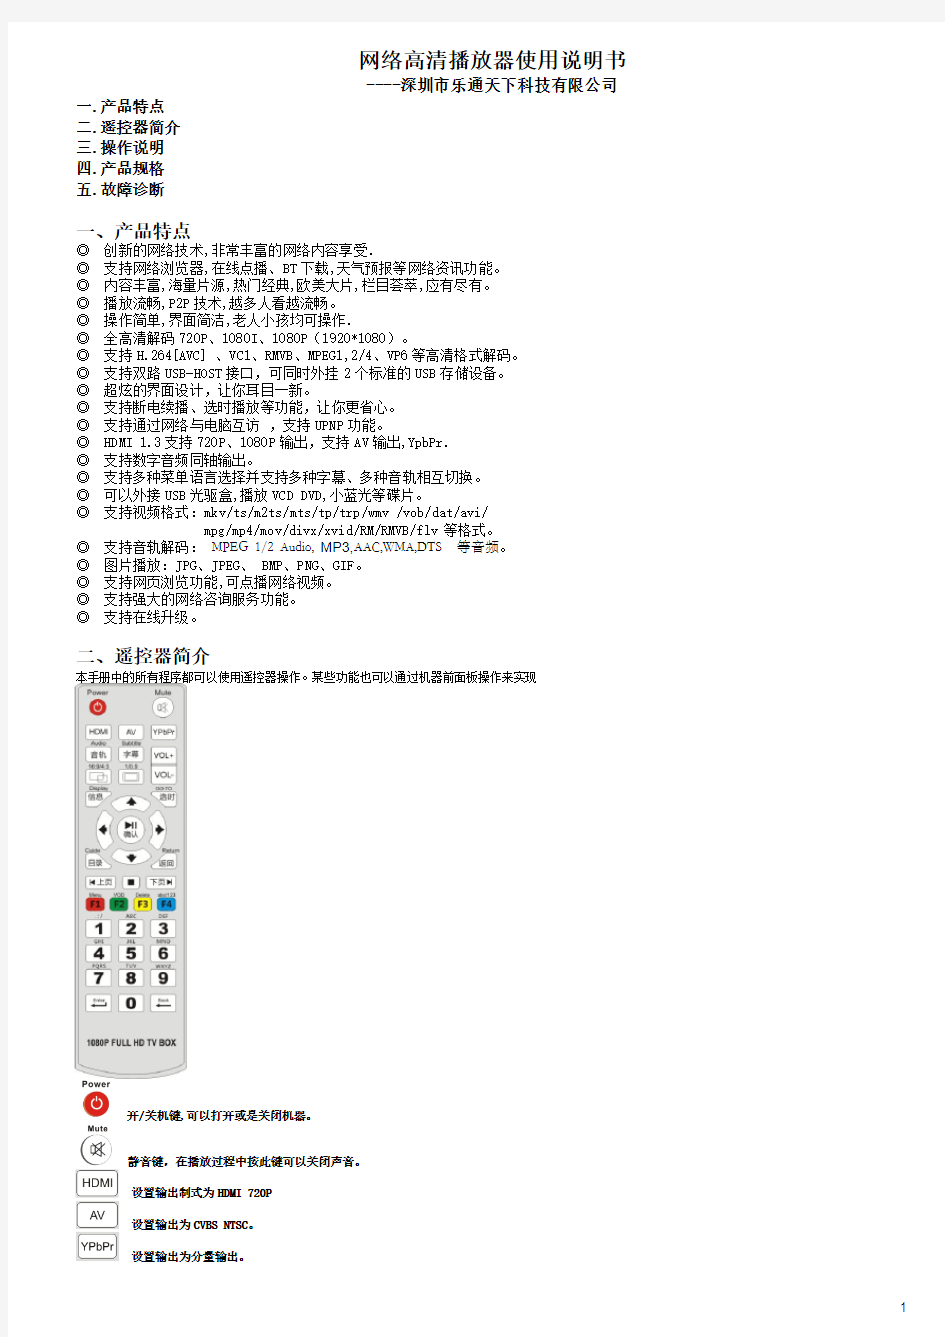 蓝天使Q1-中文使用说明书-blue-20110829-1700